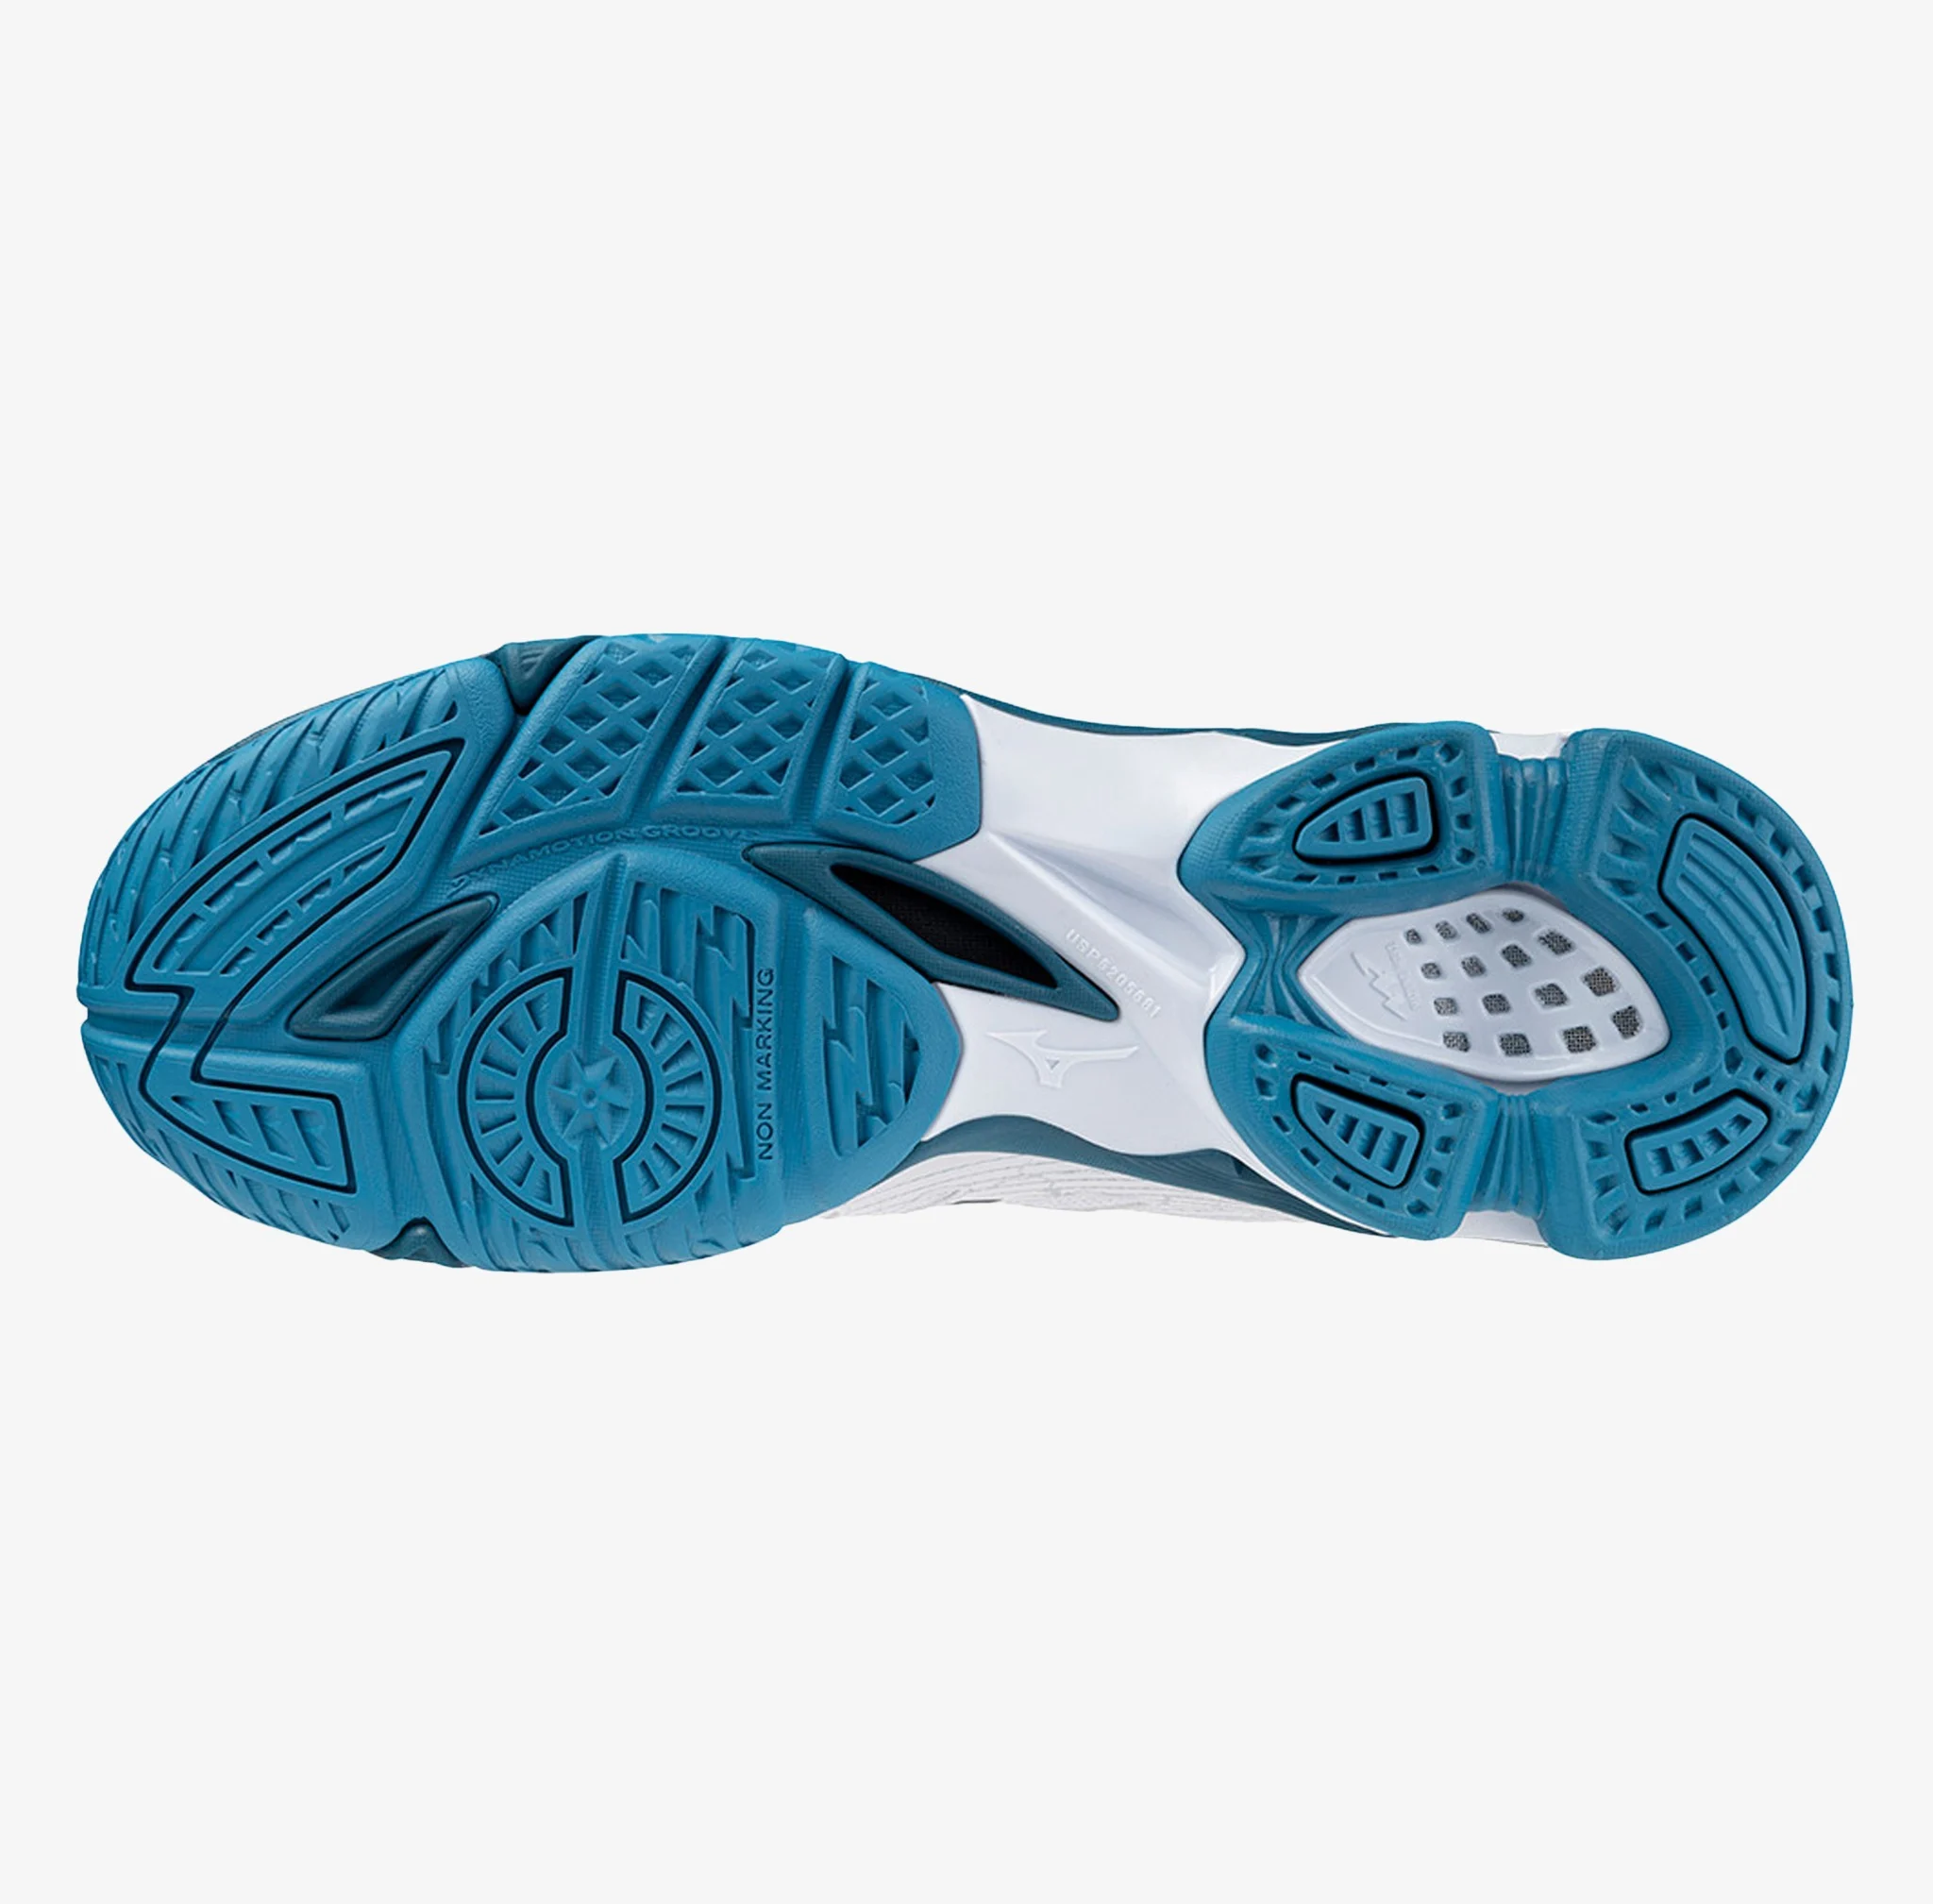 Giày cầu lông Mizuno Wave Voltage - Trắng xanh biển chính hãng